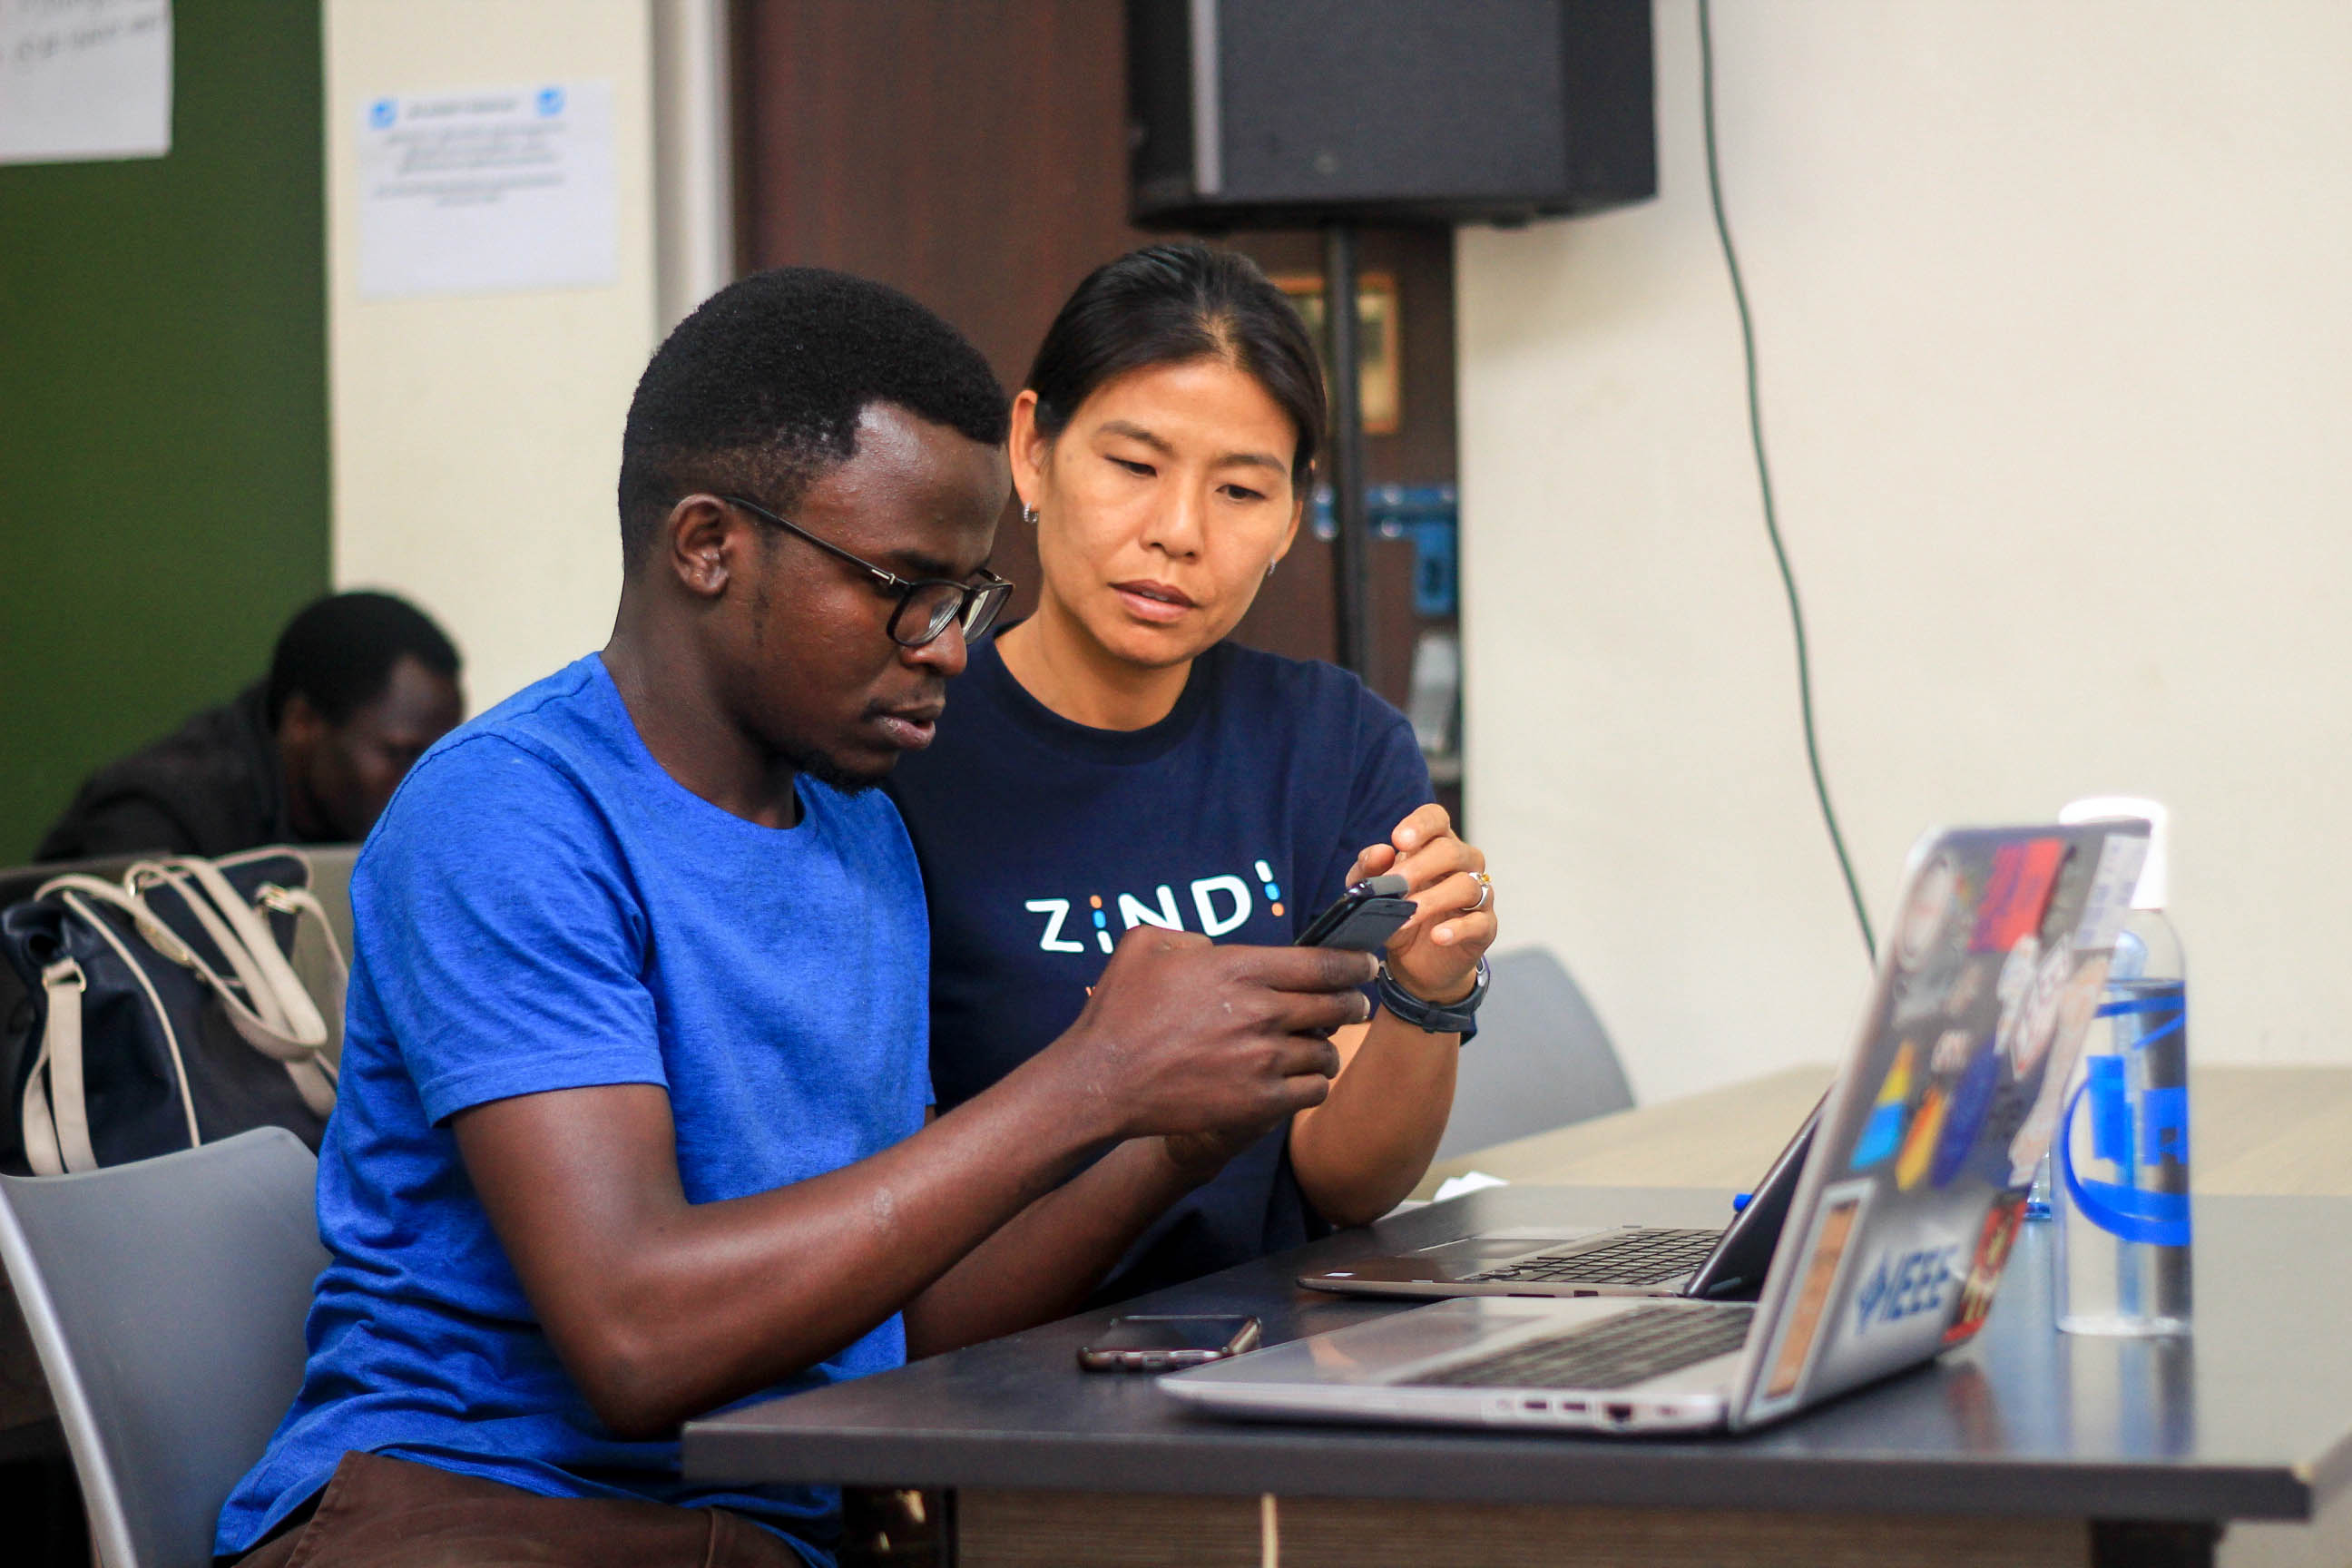 african crowdsolving startup zindi scales 10,000 data scientists | techcrunch